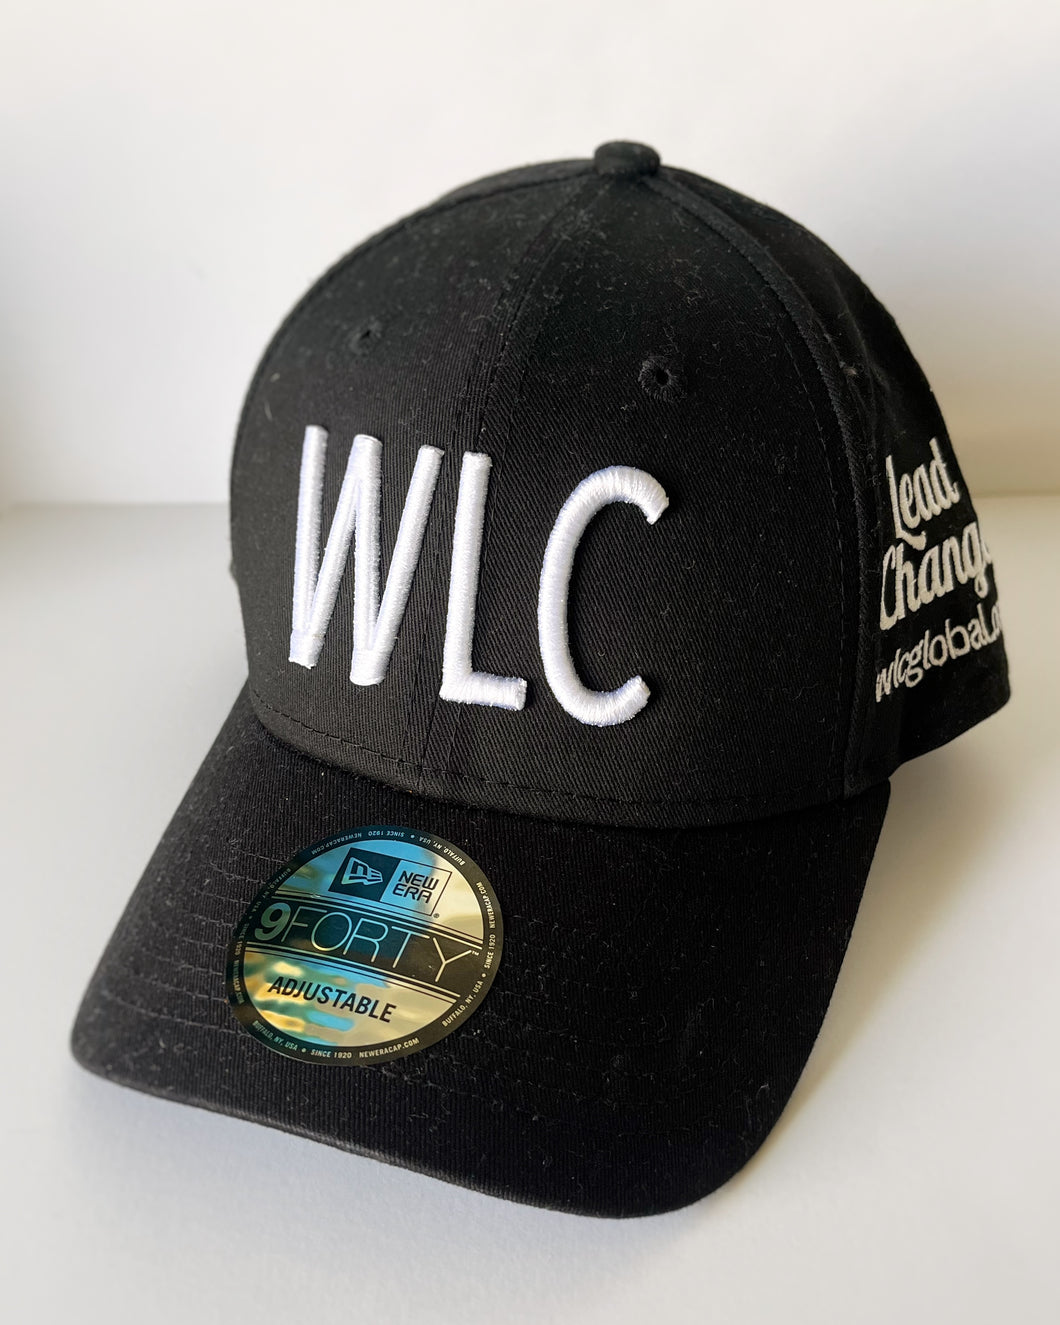 WLC Cap